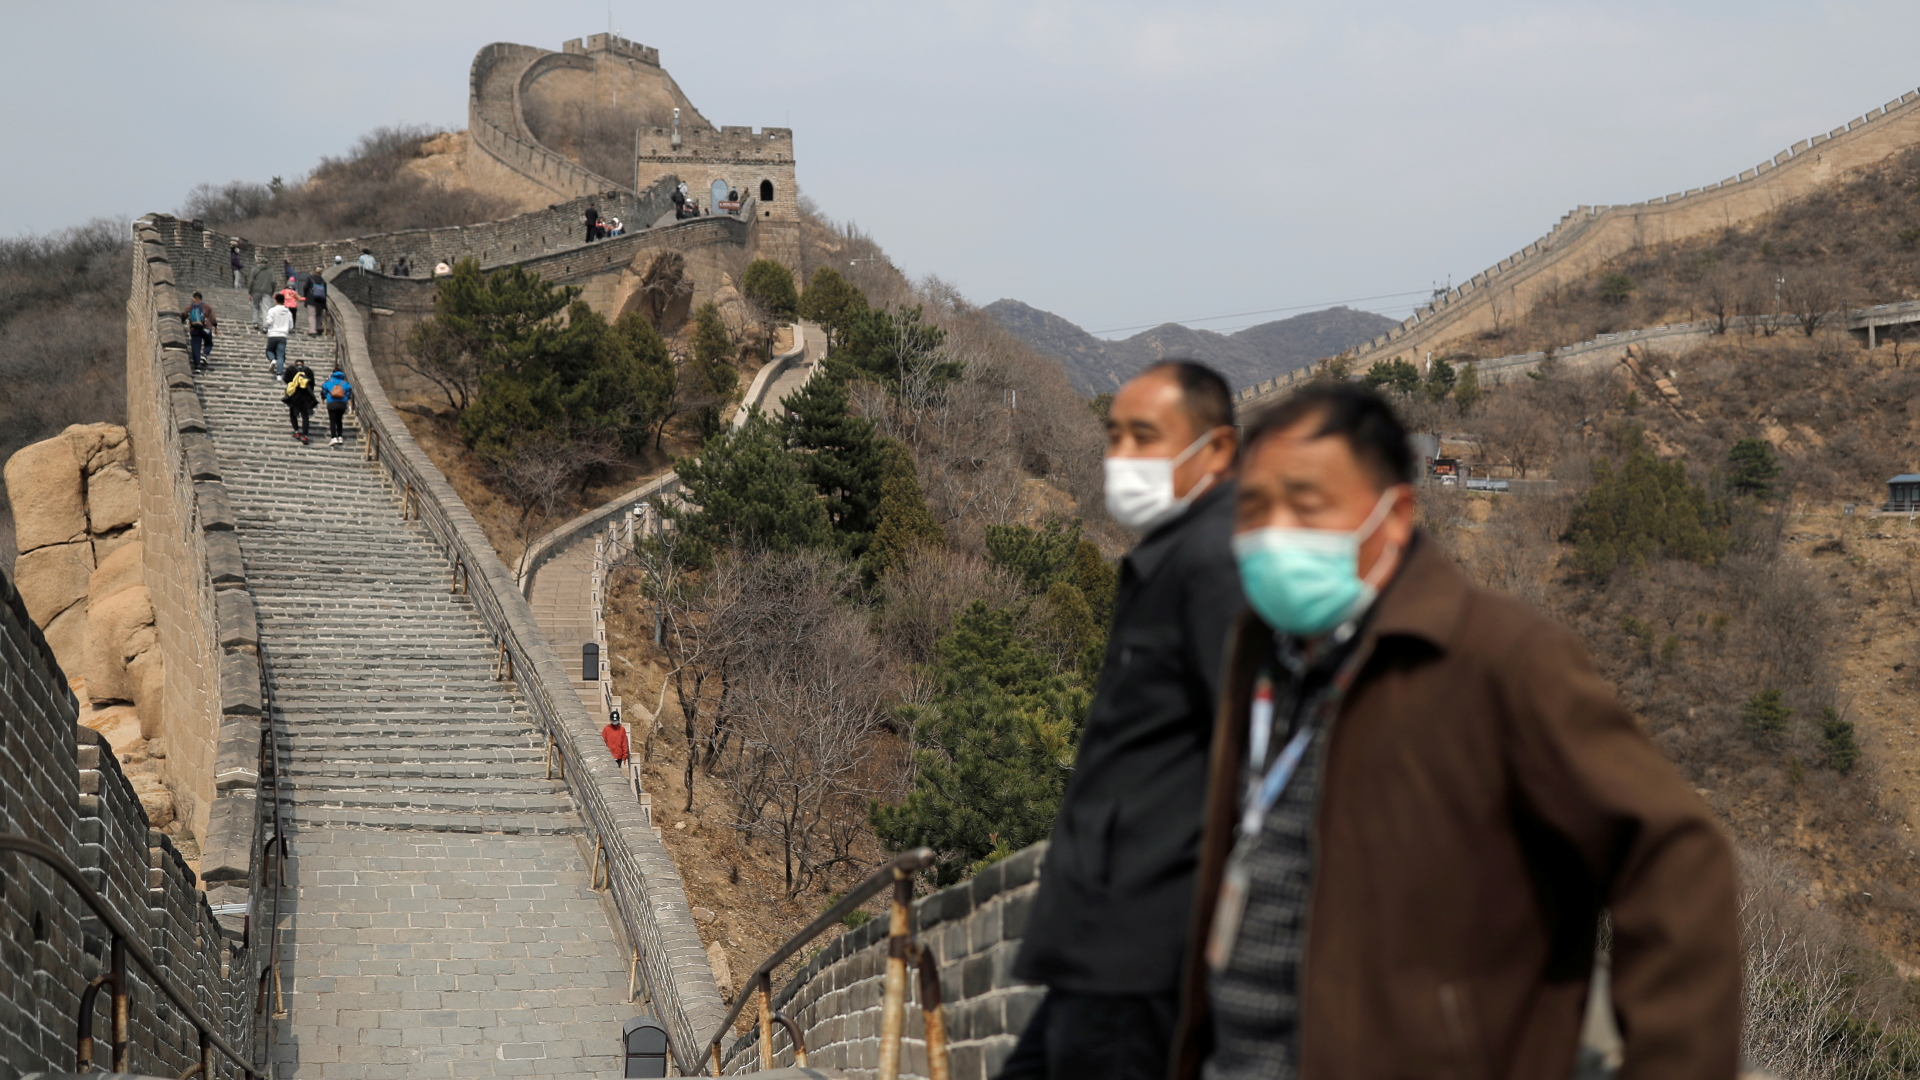 Die Große Mauer in China ist wieder für das Publikum geöffnet. | Bildquelle: REUTERS